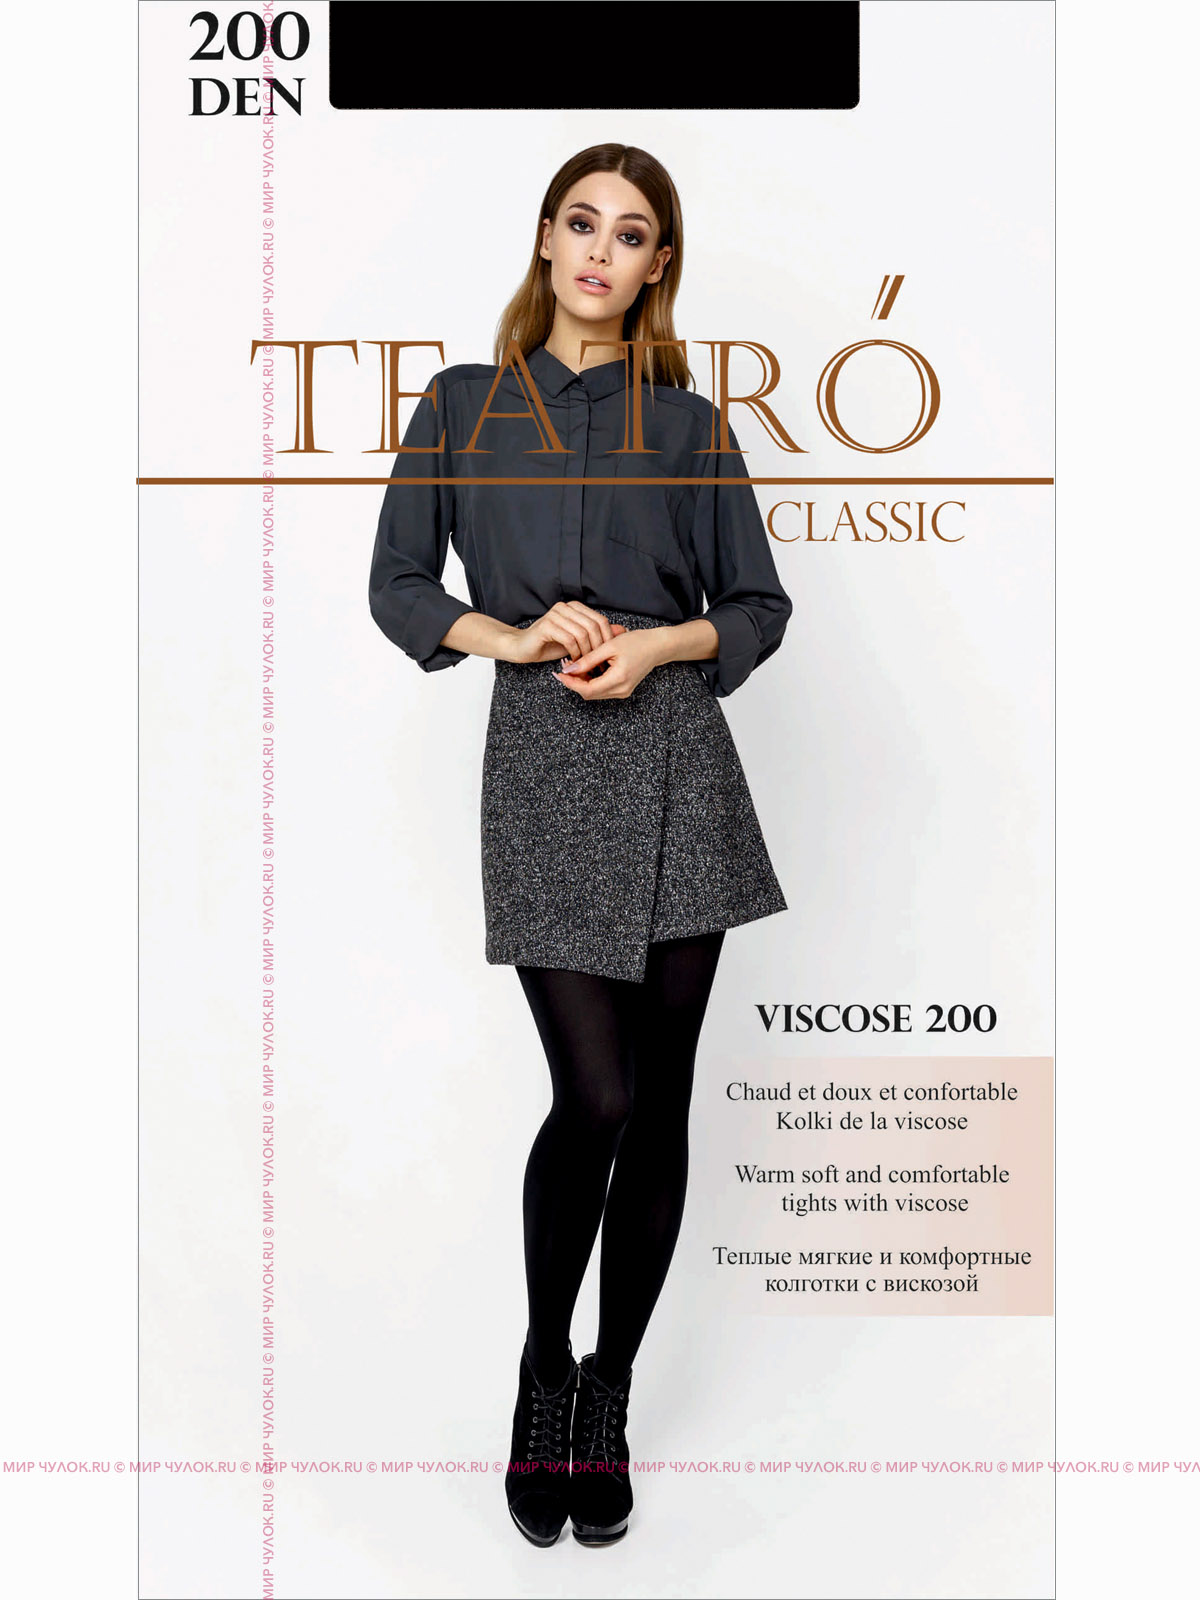 Купить колготки TEATRO VISCOSE 200 в магазине Мир Чулок.РУ